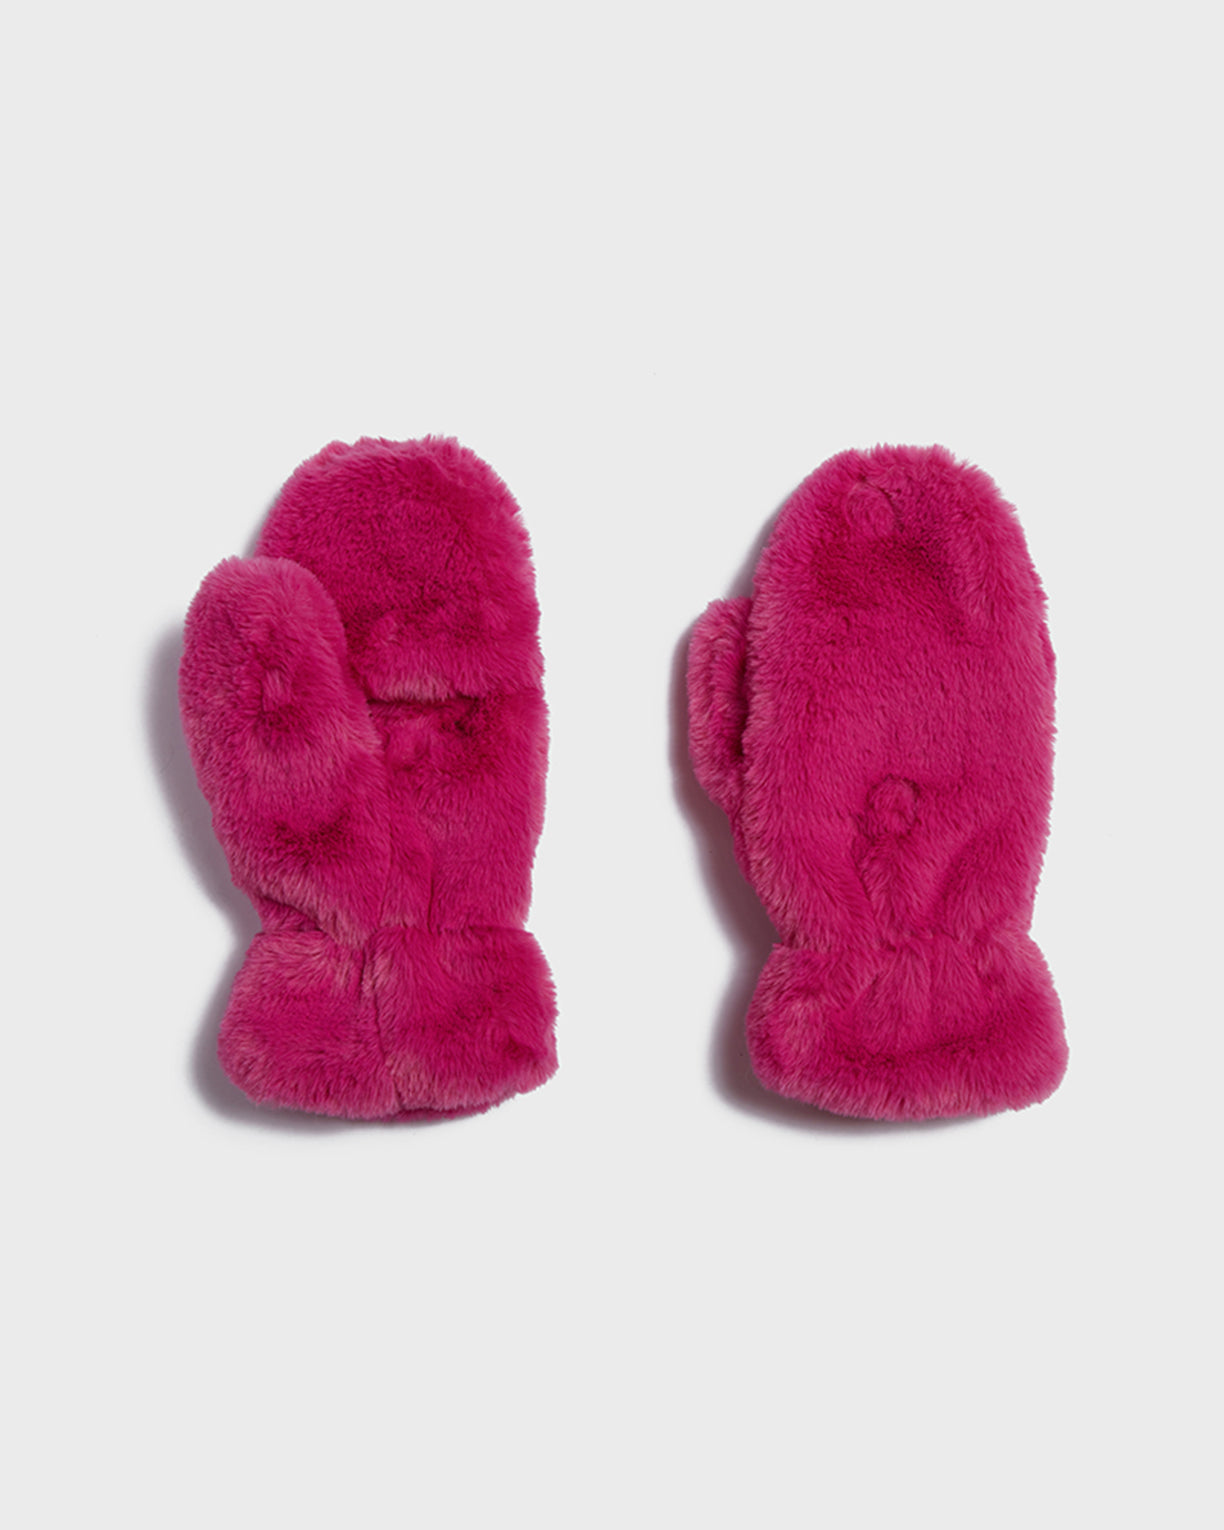 Amara Kids Confetti Pink – Apparis